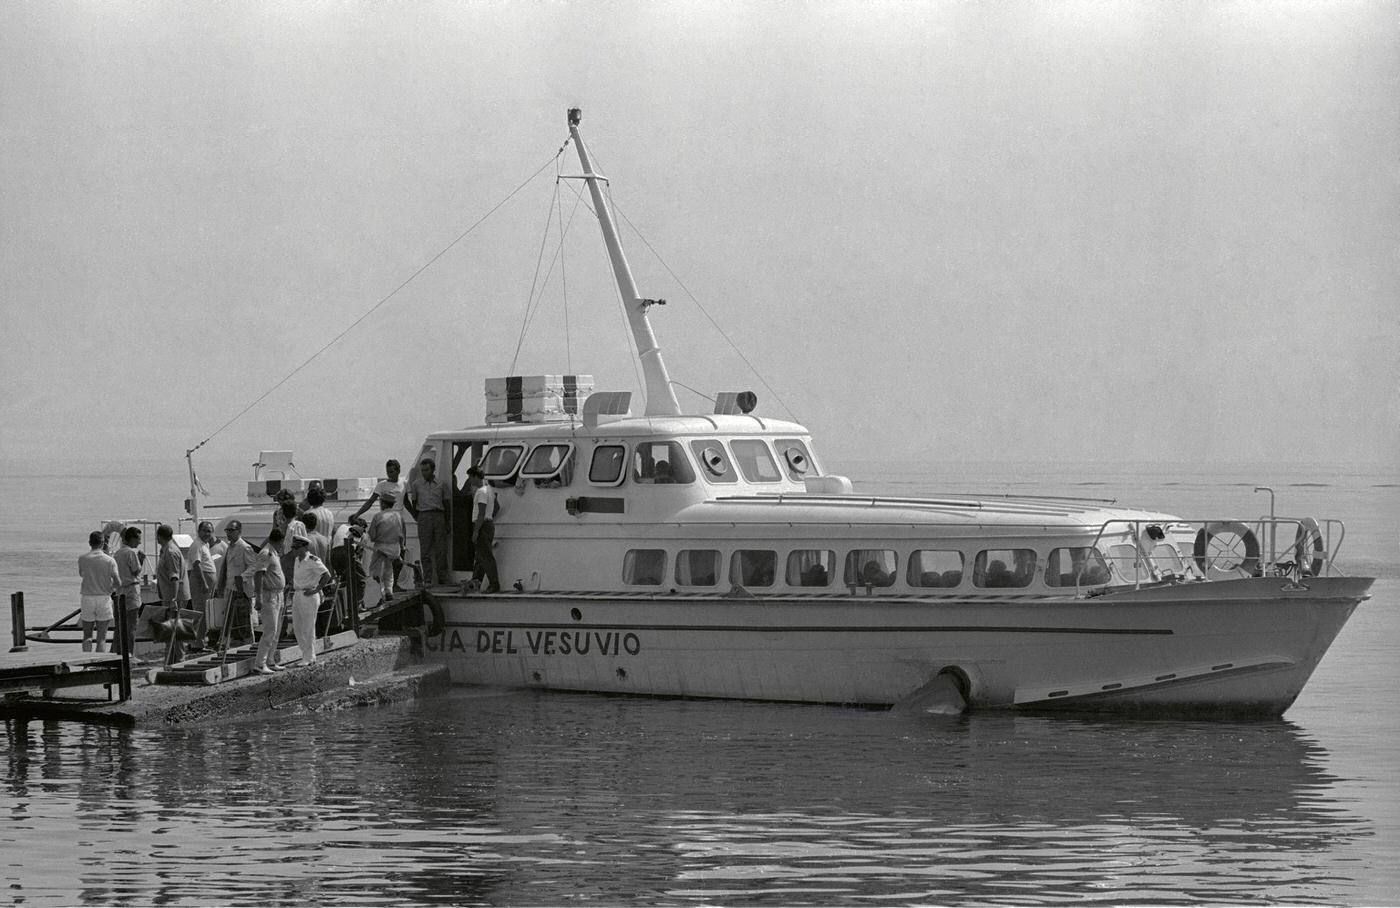 Boarding the hydrofoil on Vulcano Island, Sicily, June 1970.